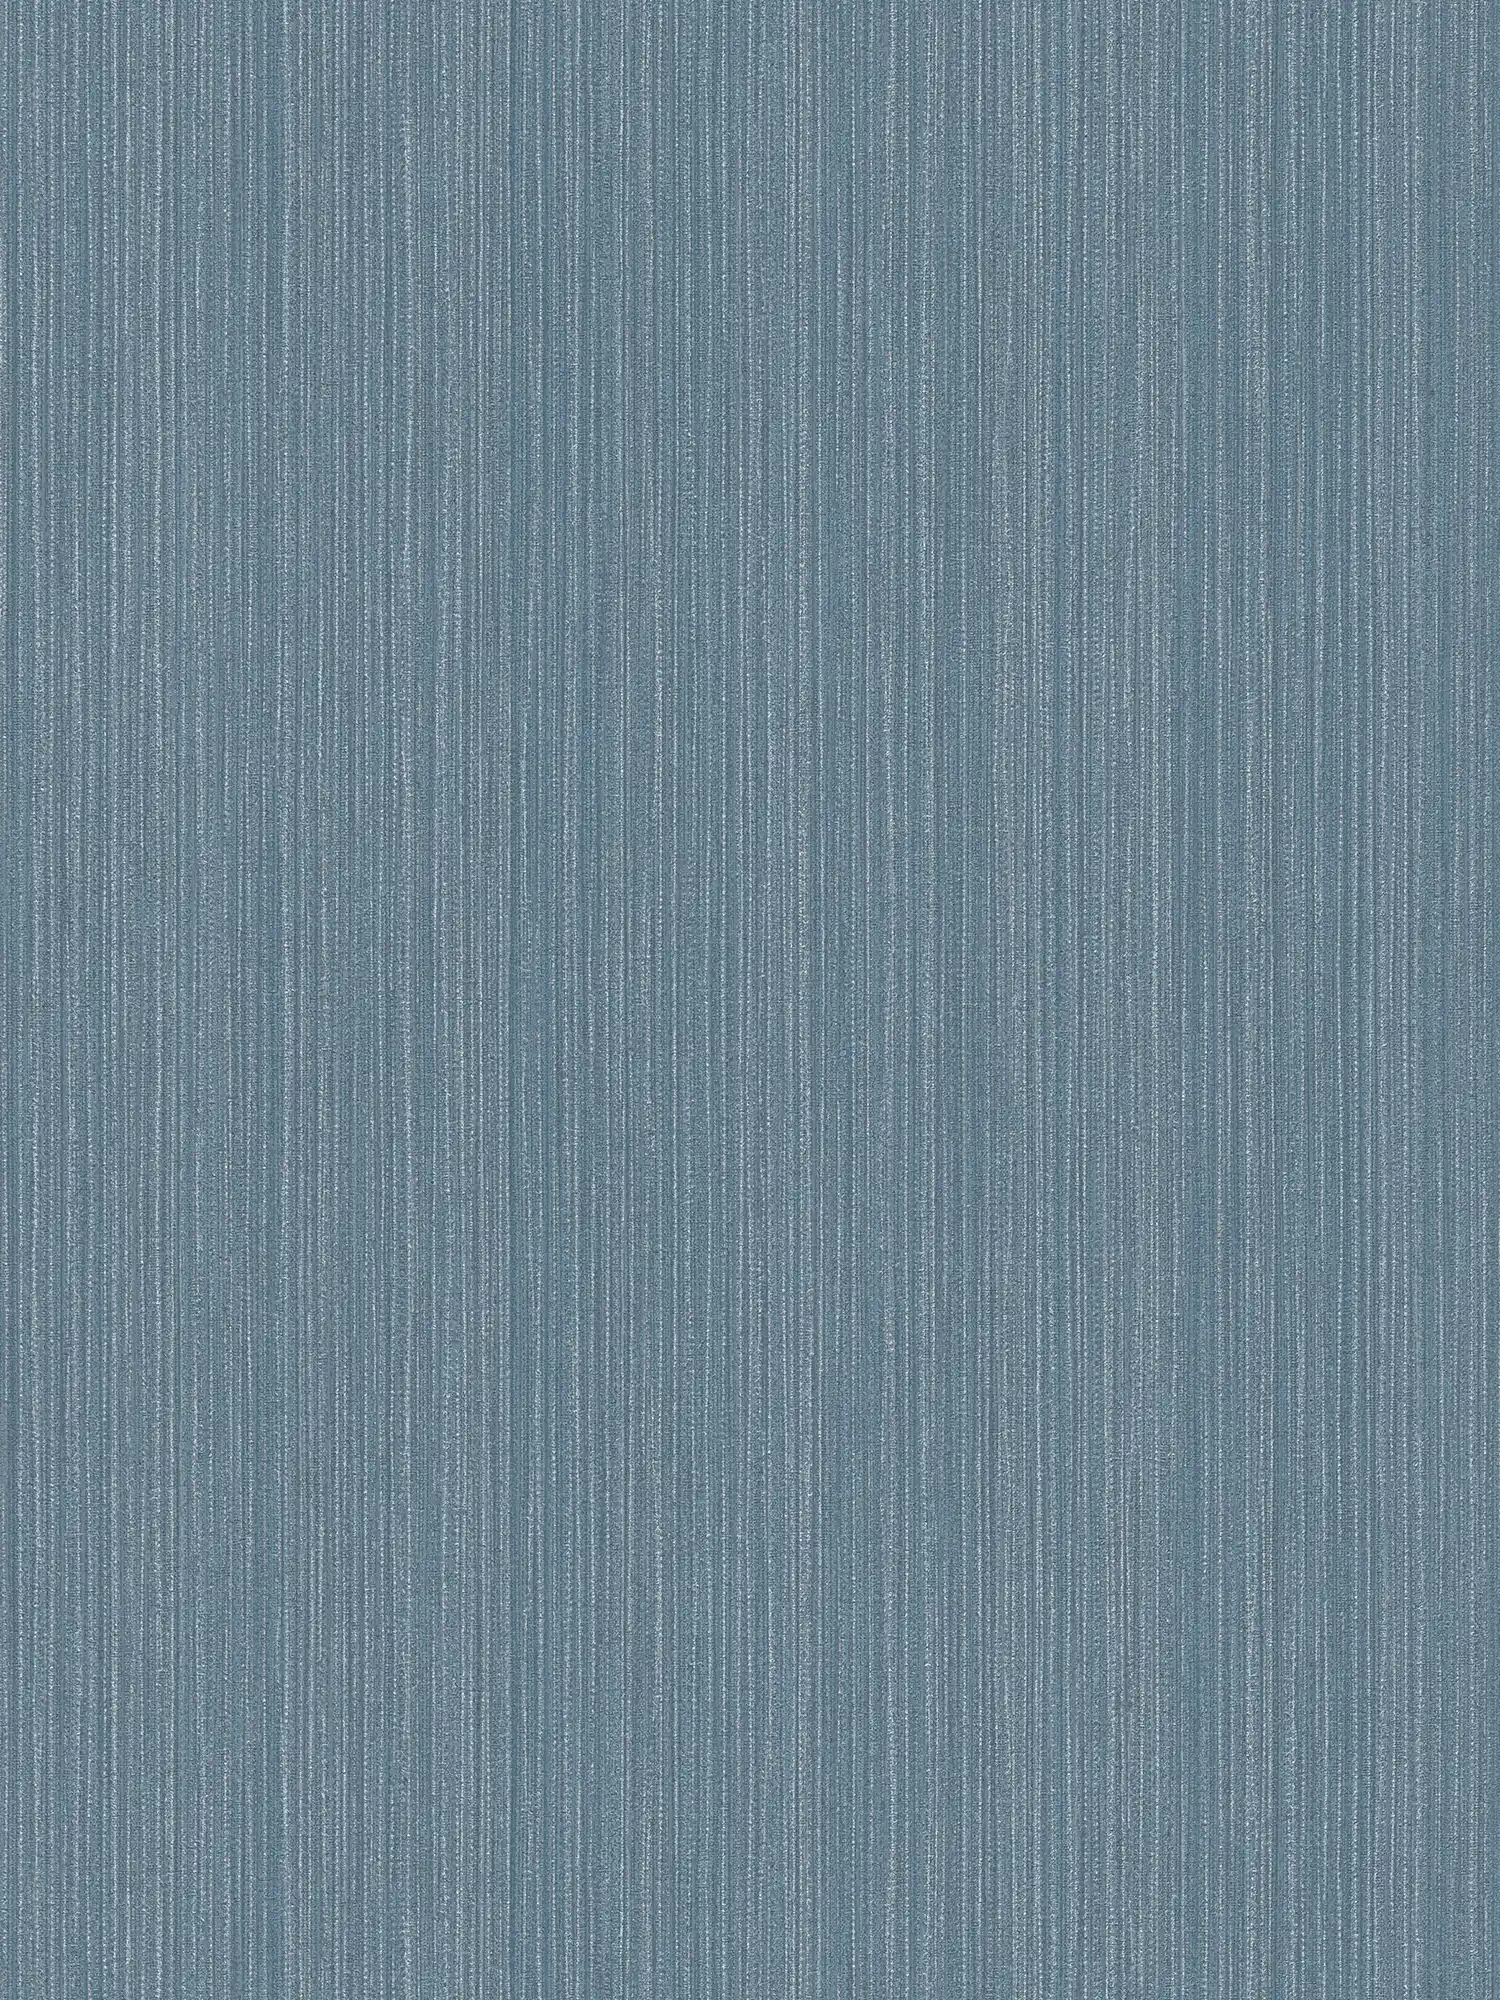         Papier peint uni gris-bleu aspect textile - bleu, métallisé
    